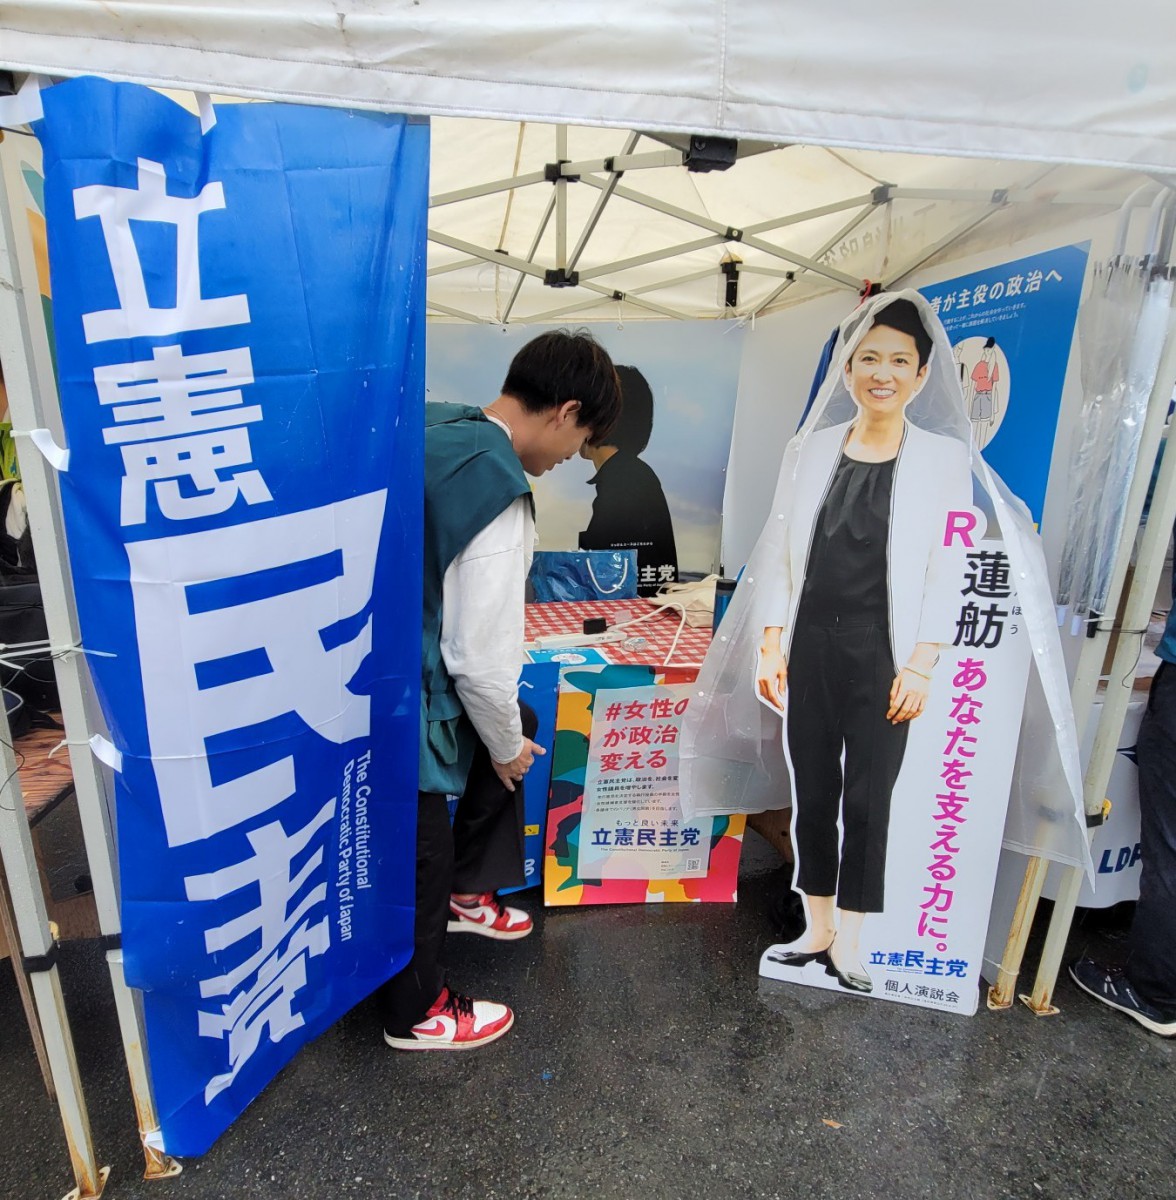 日本若者協議会主催”民主主義ユースフェスティバル”